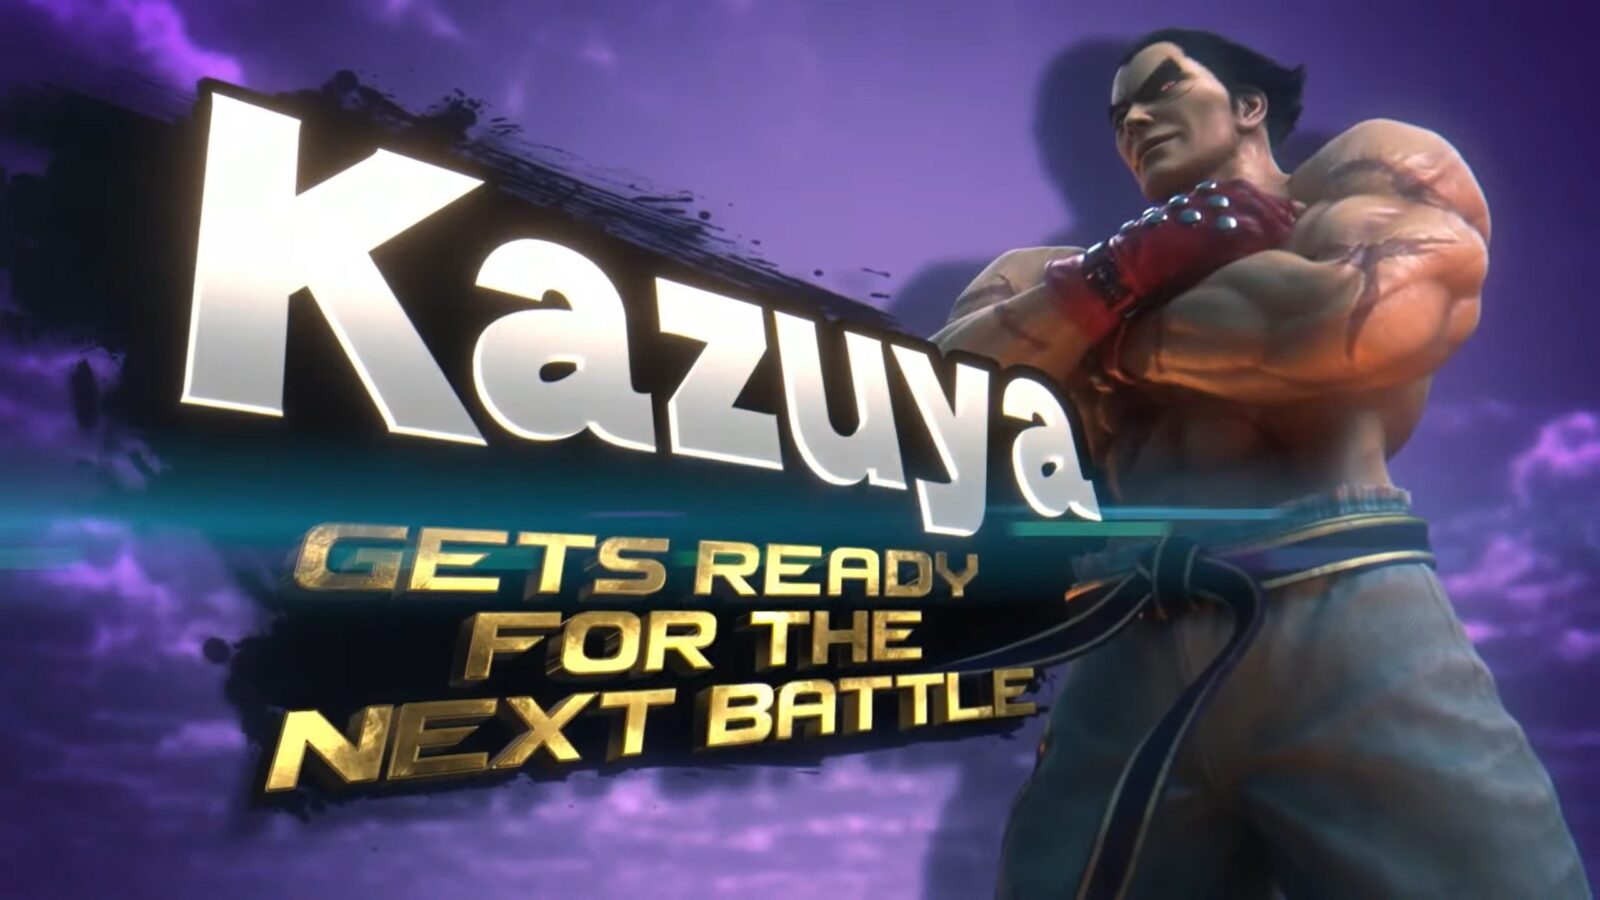 Kazuya de Tekken é o novo lutador de Super Smash Bros. Ultimate